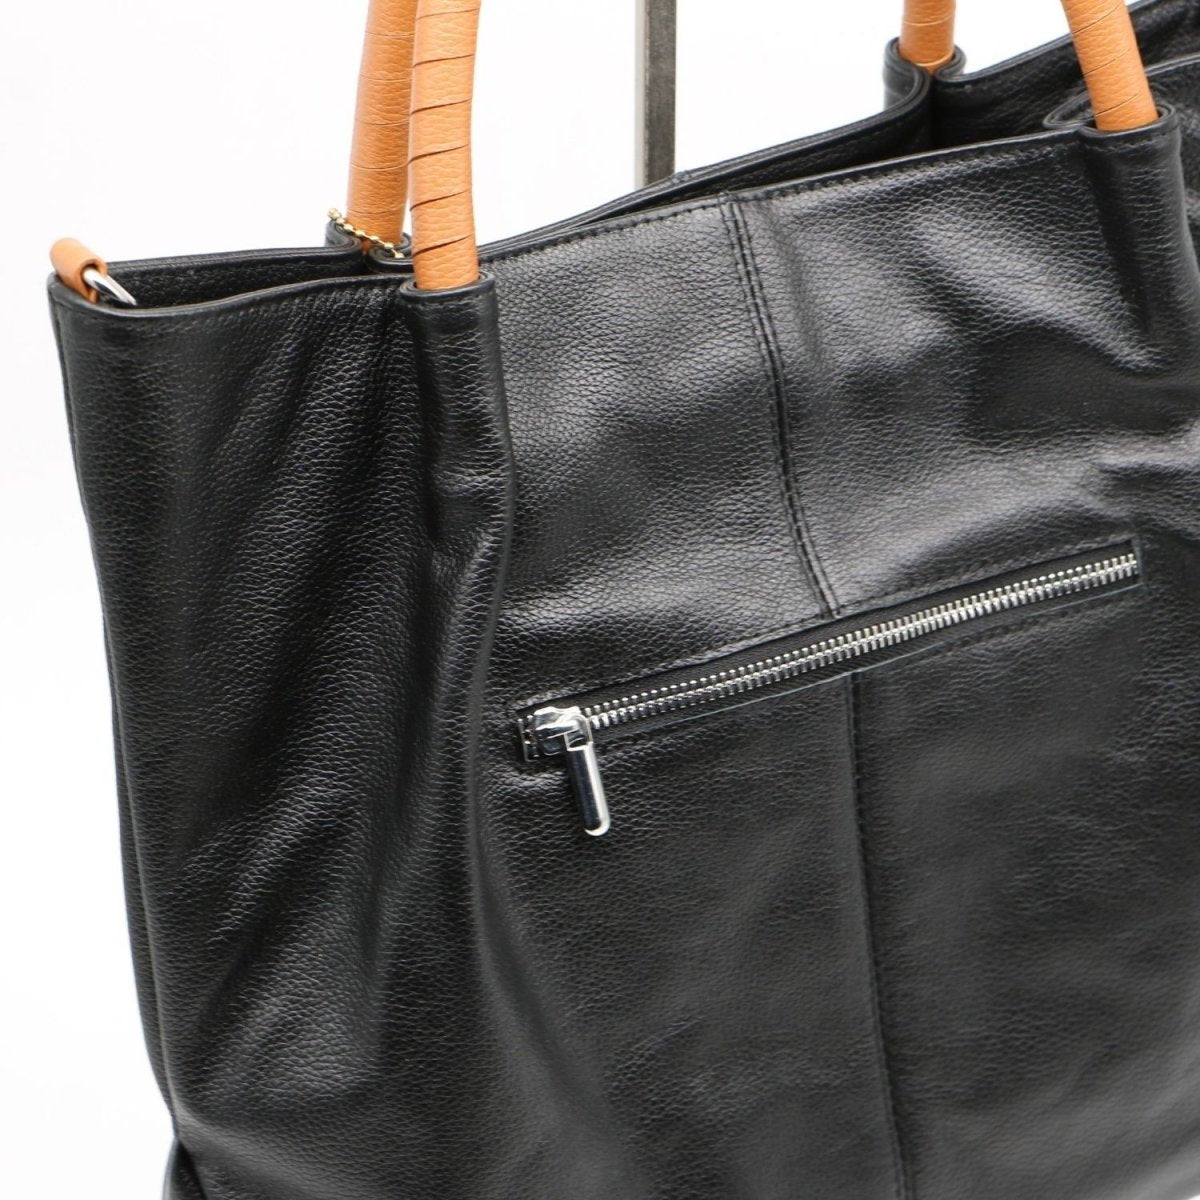 Sydney Leather Handbag - Ozzell London